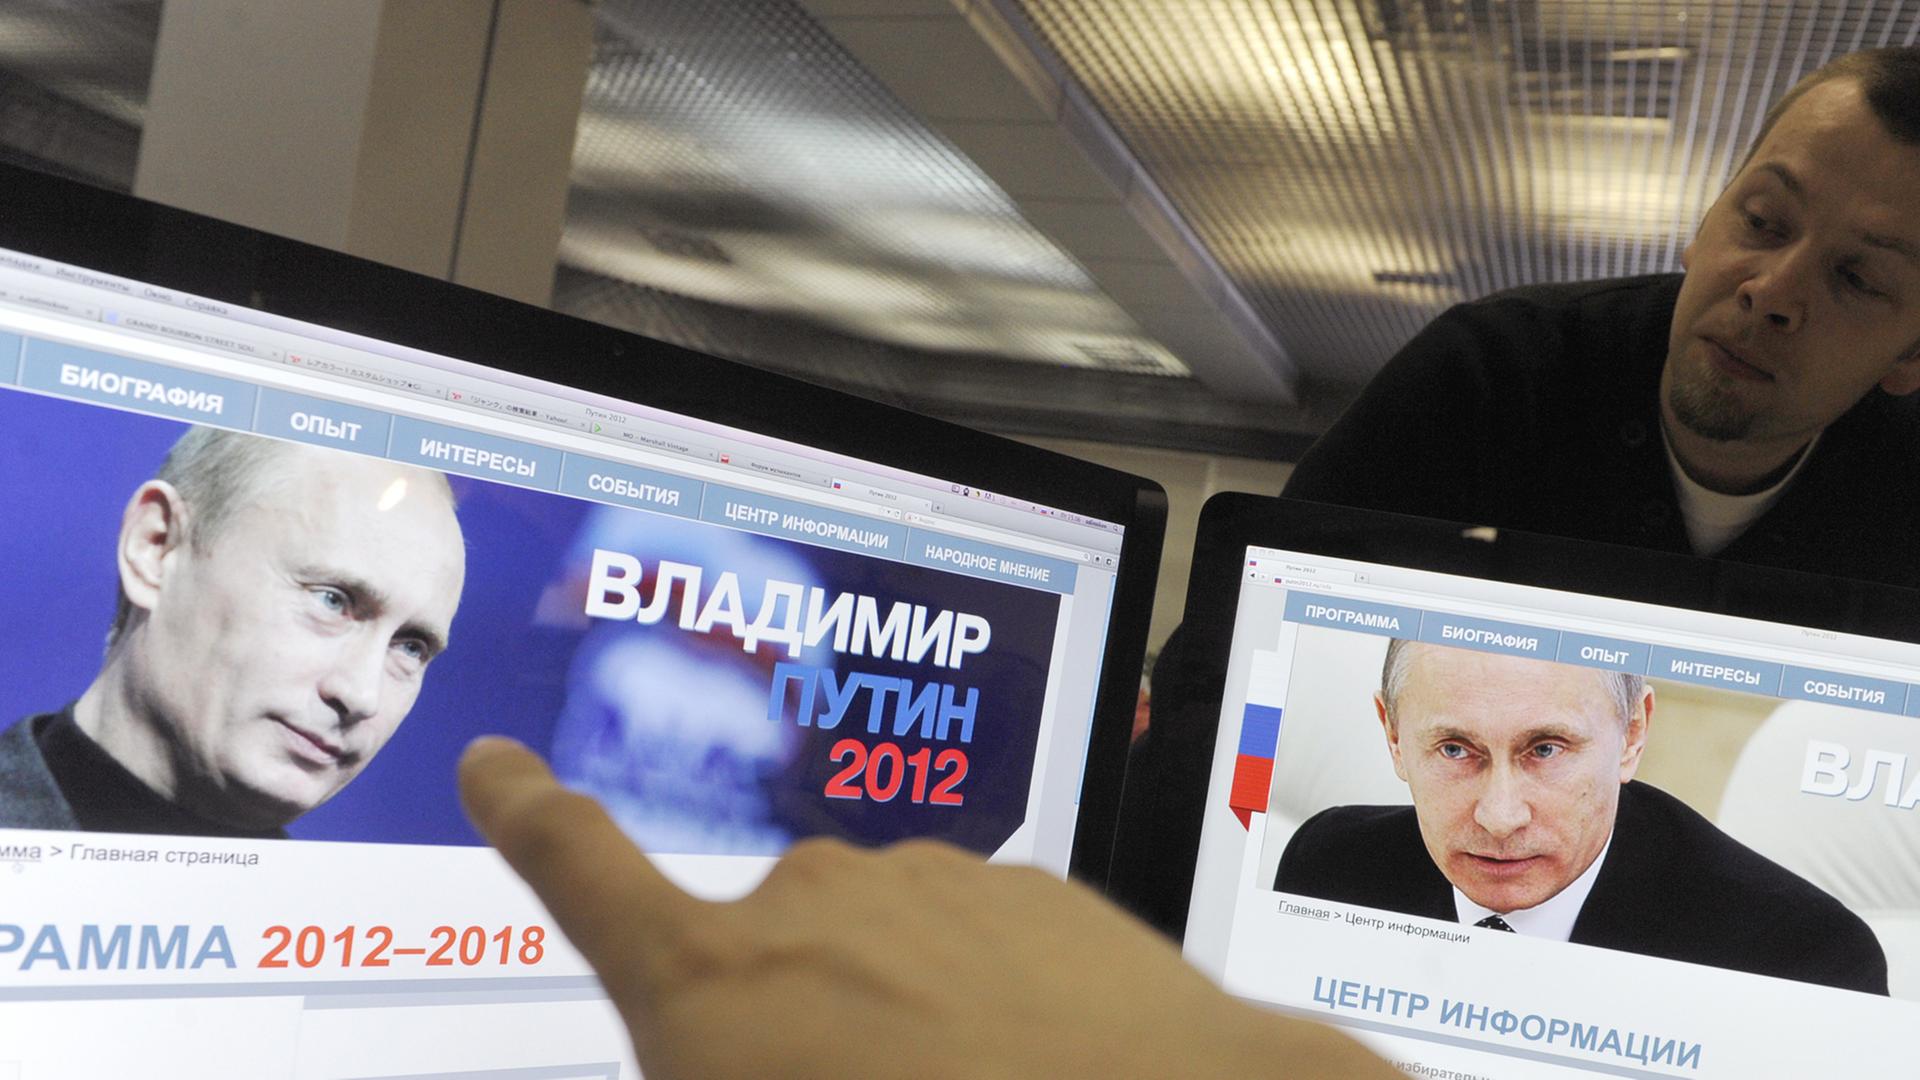 Ein Finger zeigt auf zwei Computerbildschirme, auf denen der russische Präsident Wladimir Putin zu sehen ist.